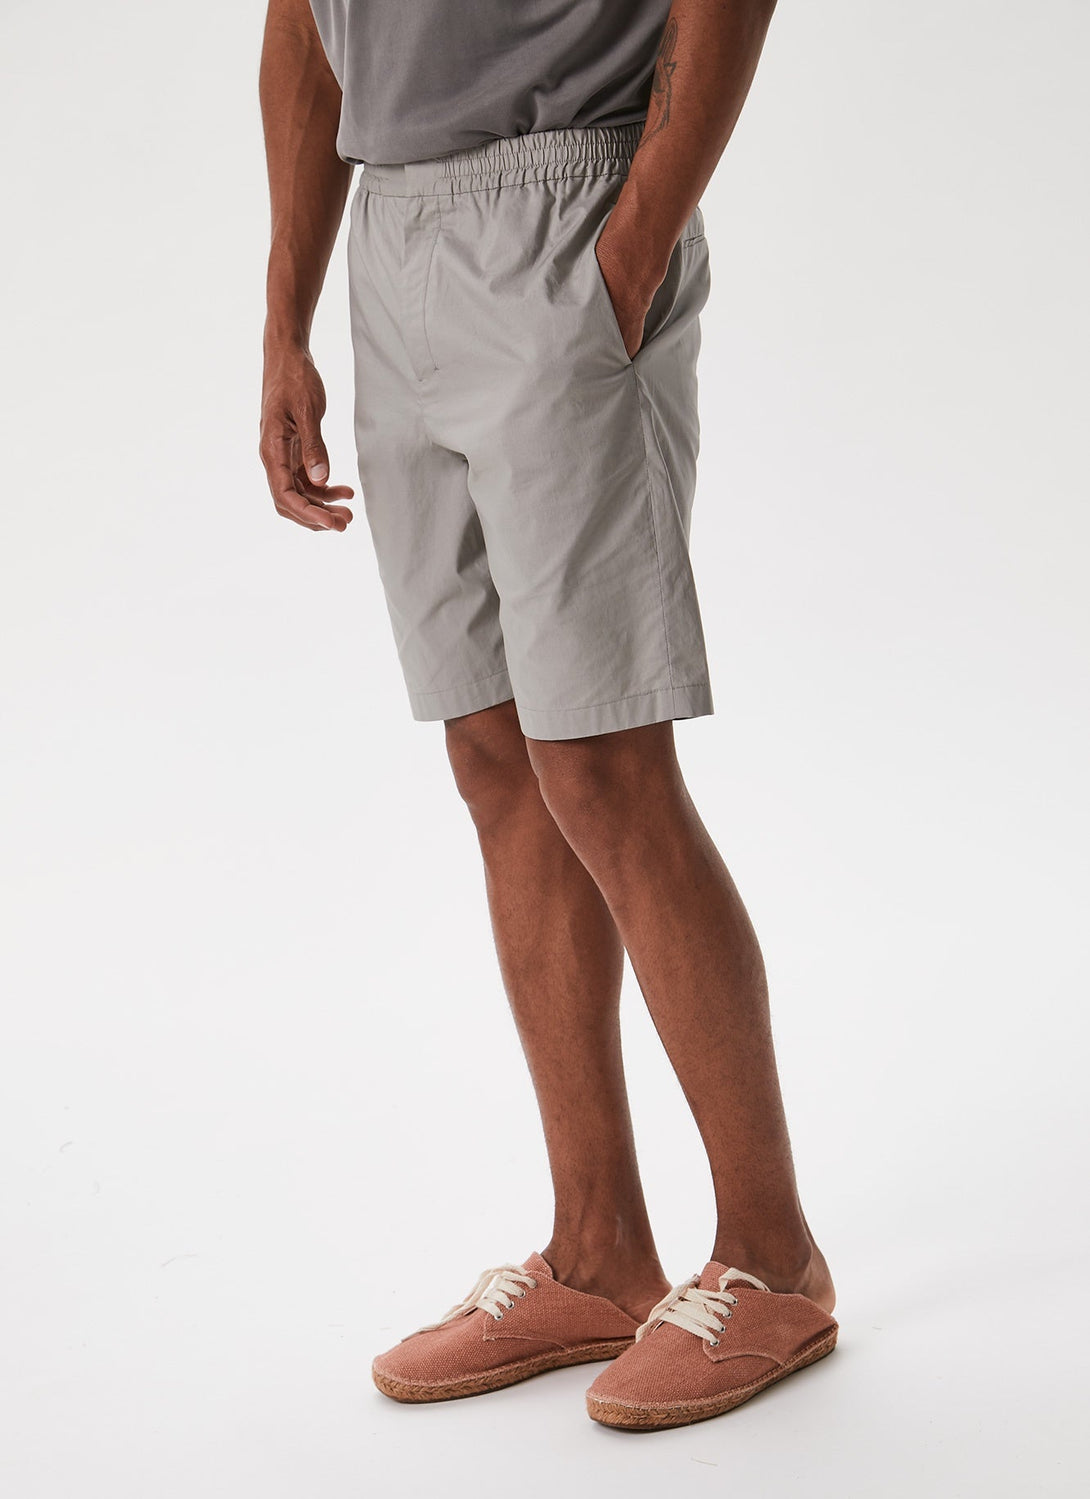 Men Shorts | Stone Short by Spanish designer Adolfo Dominguez